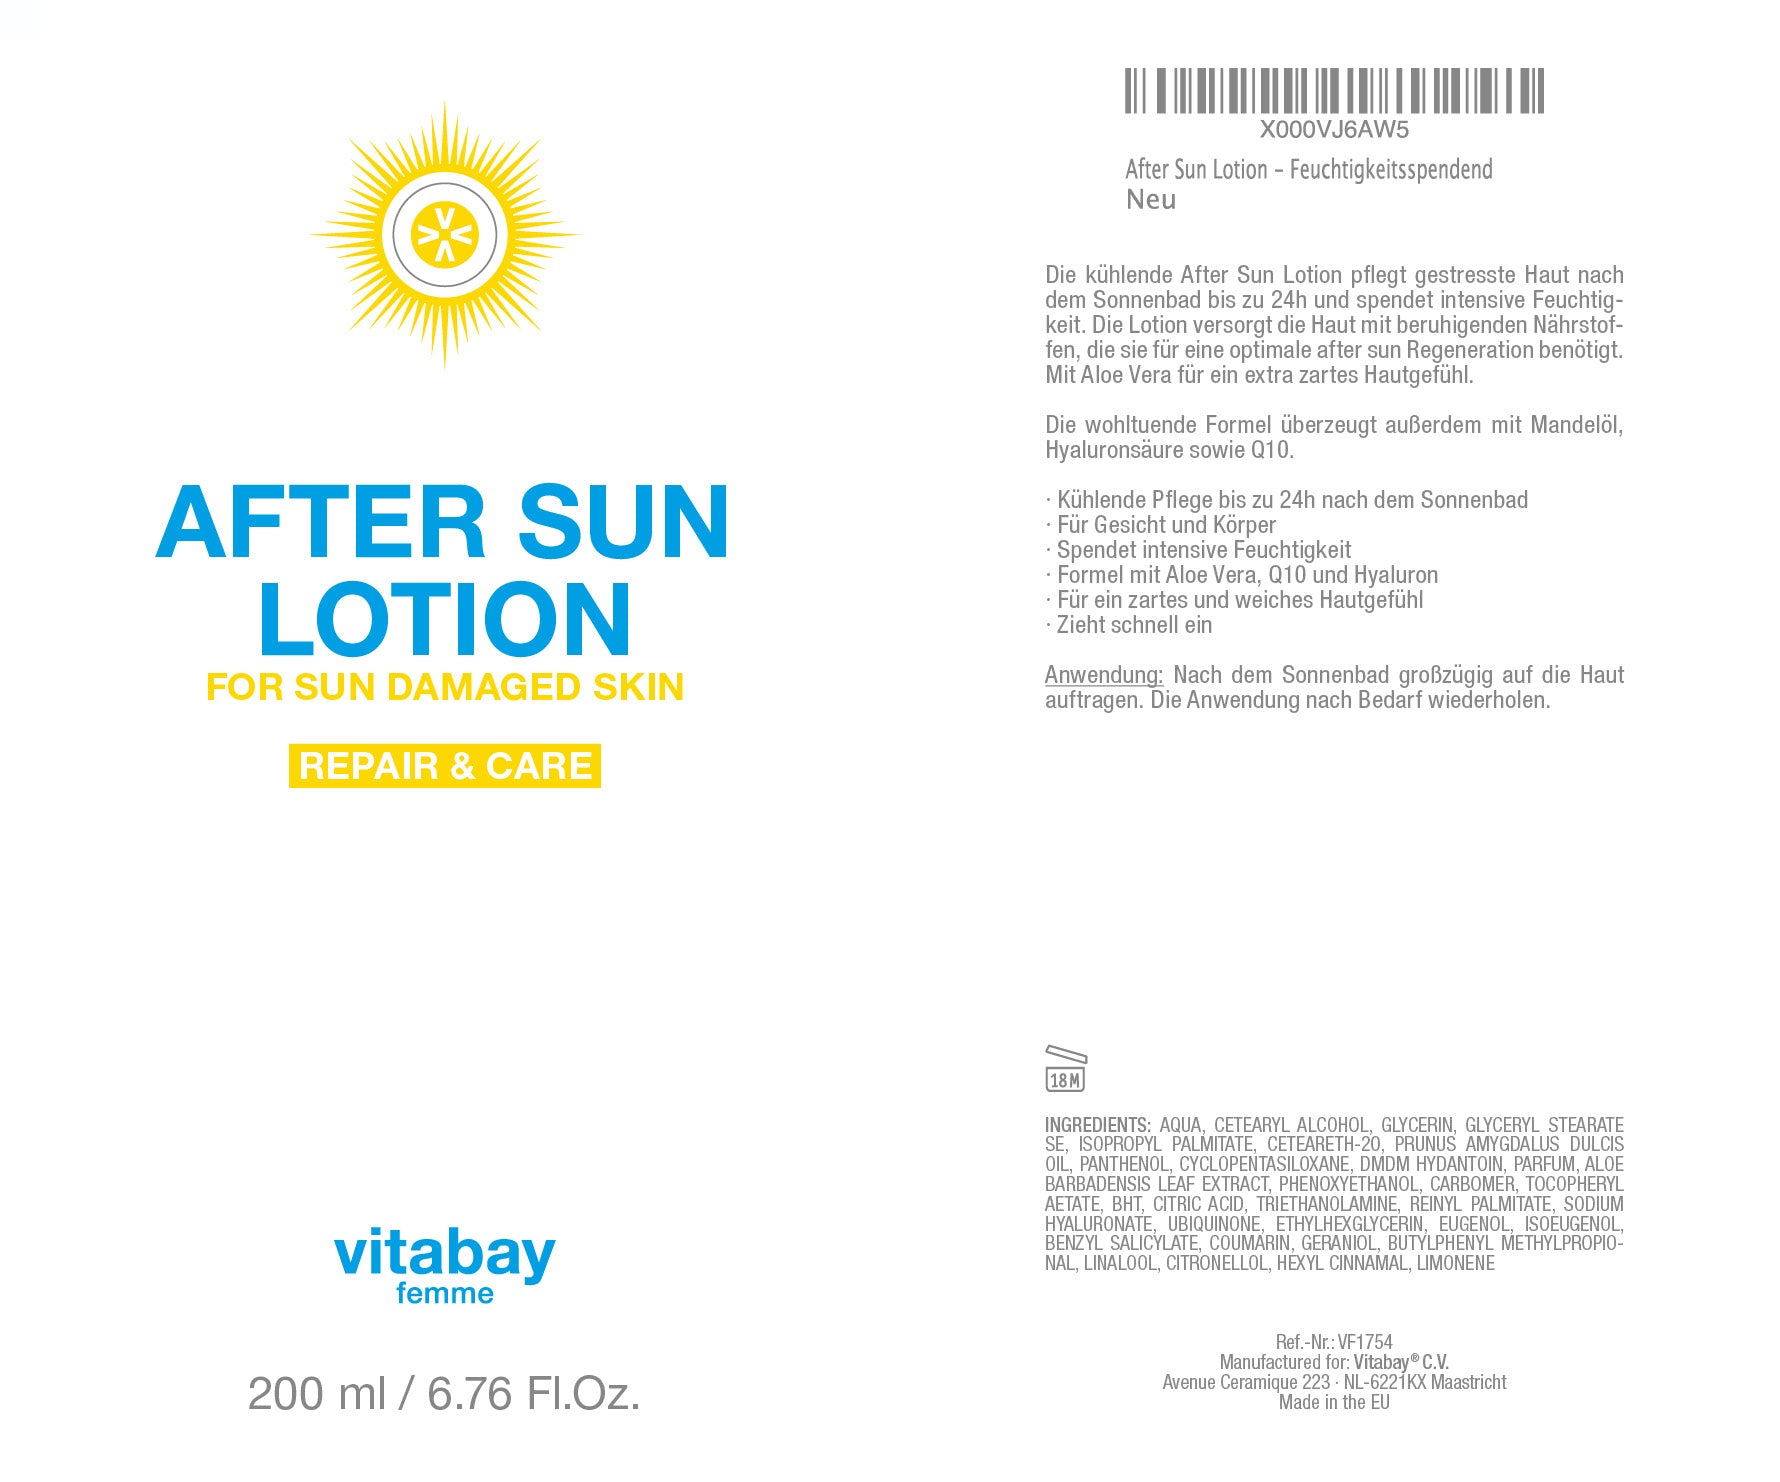 After Sun Lotion 200ml - Pflege nach dem Sonnenbad mit beruhigender Aloe Vera, Panthenol, Mandelöl